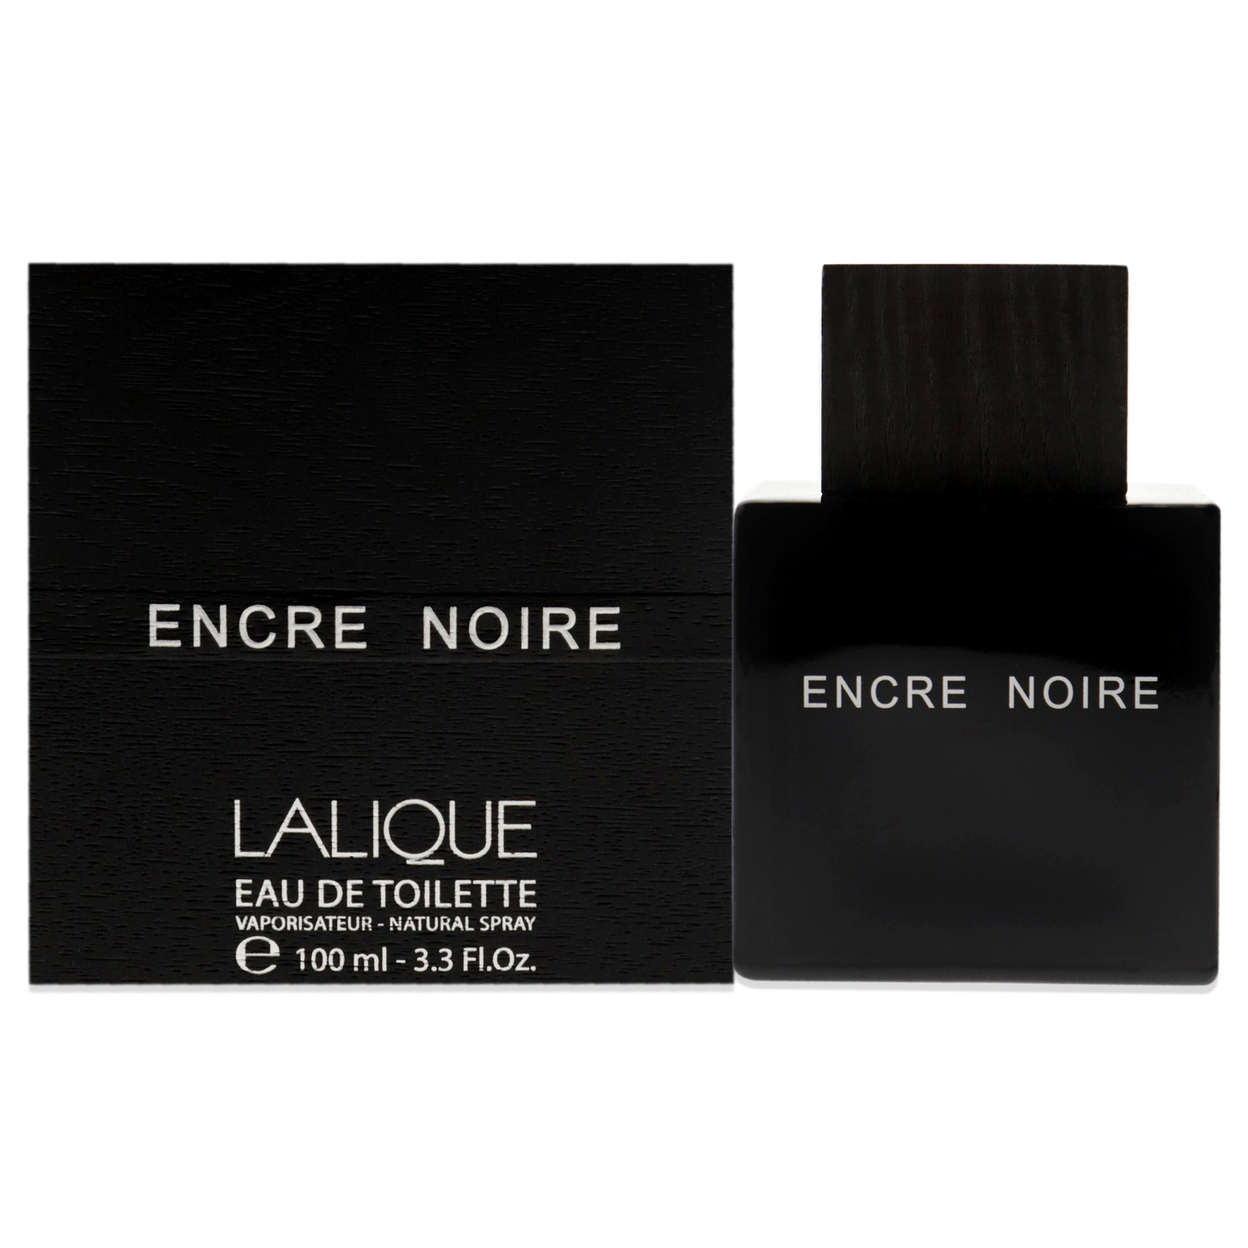 Encre Noire by Lalique Eau De Toilette Spray 3.4 oz for Men - image 1 of 3